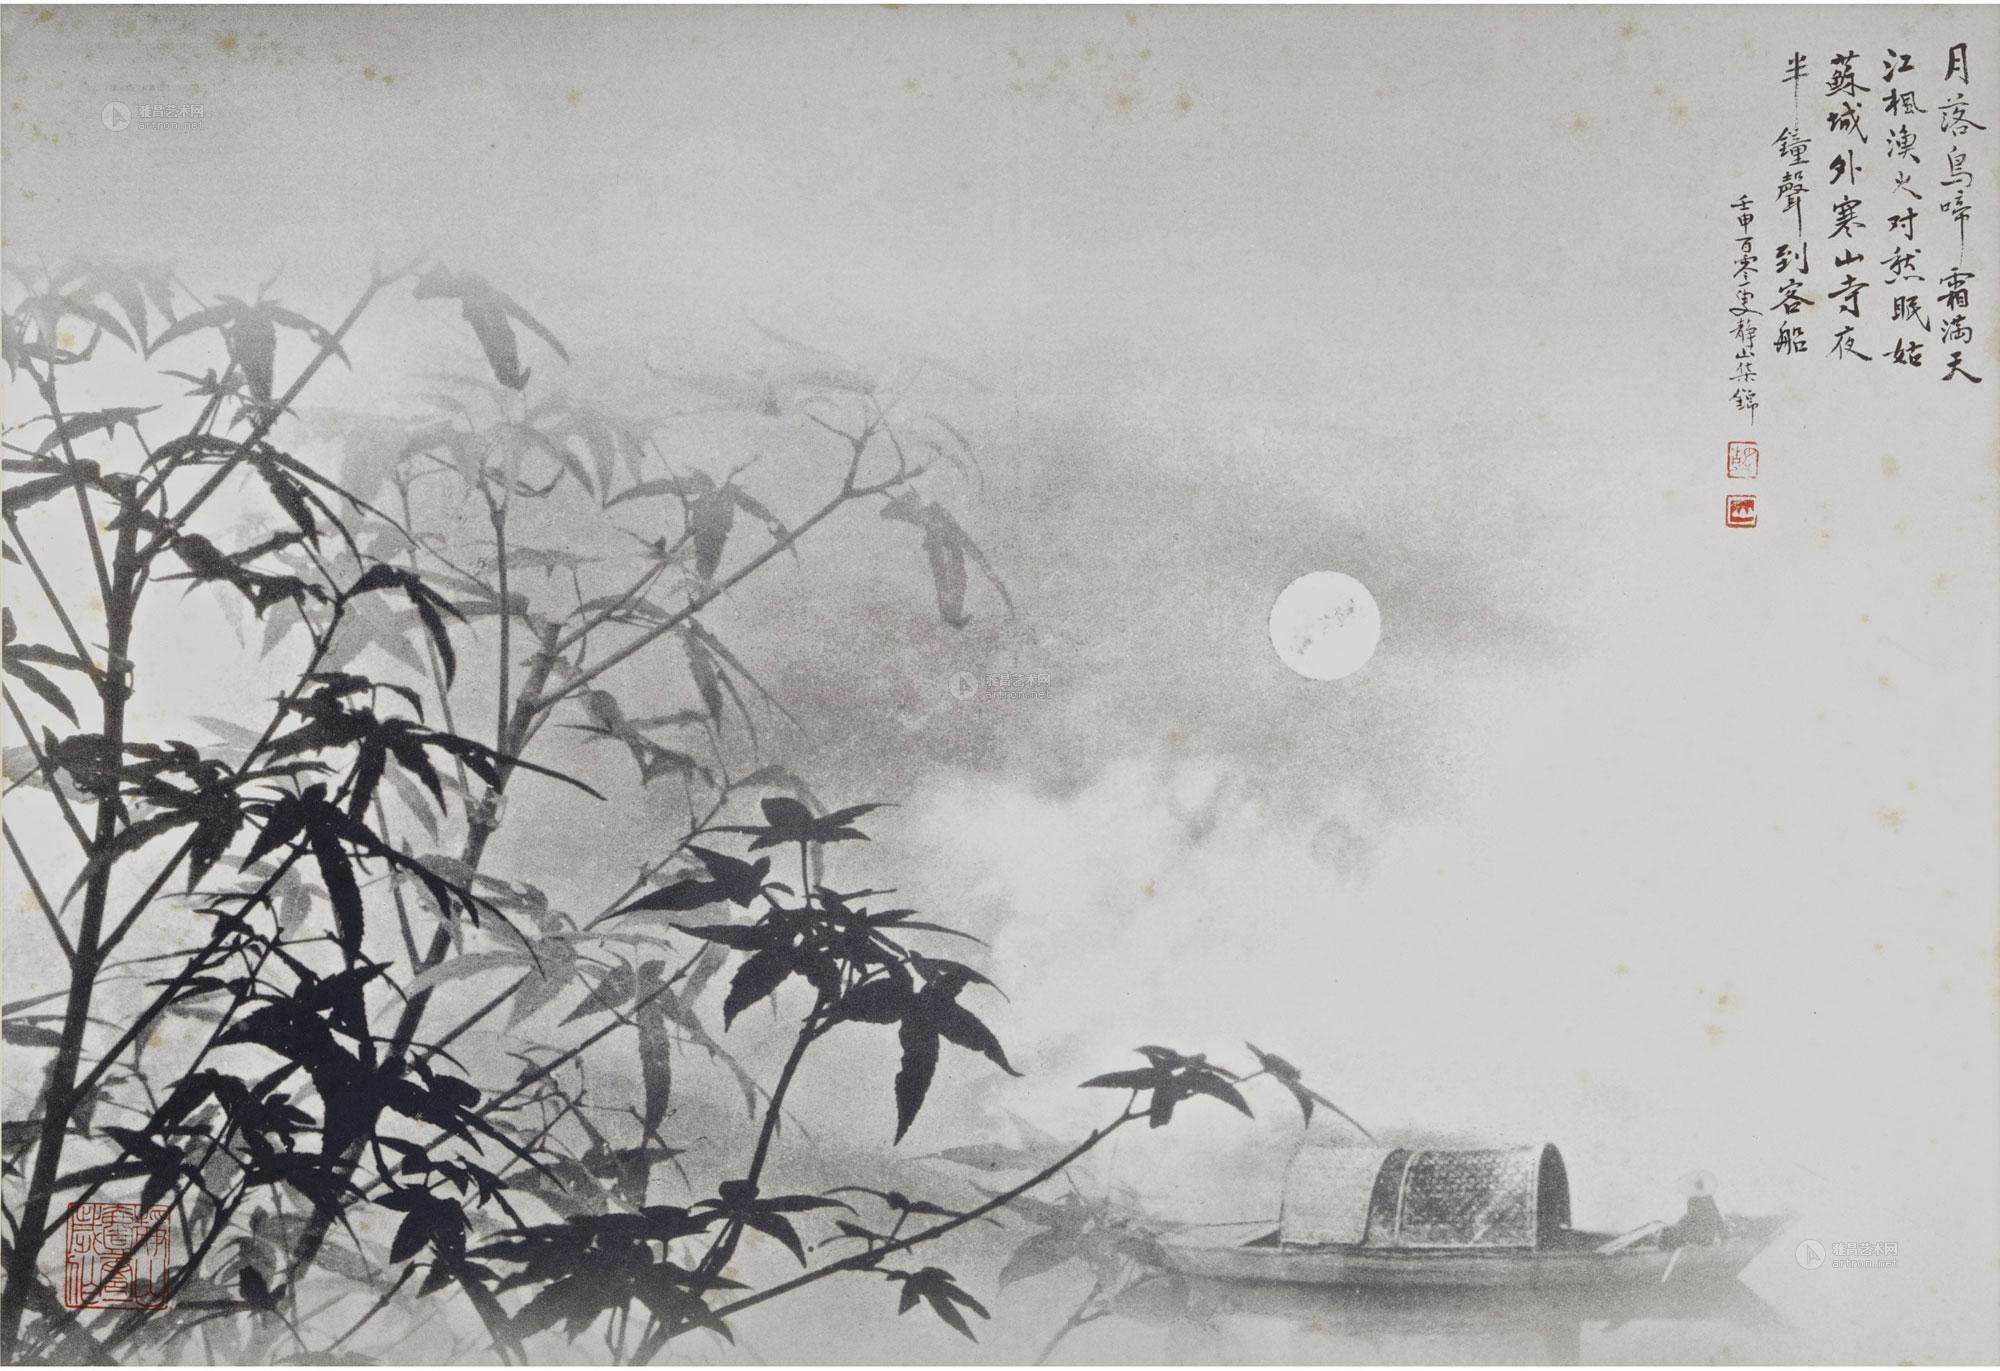 月落乌啼霜满天，江枫渔火对愁眠。